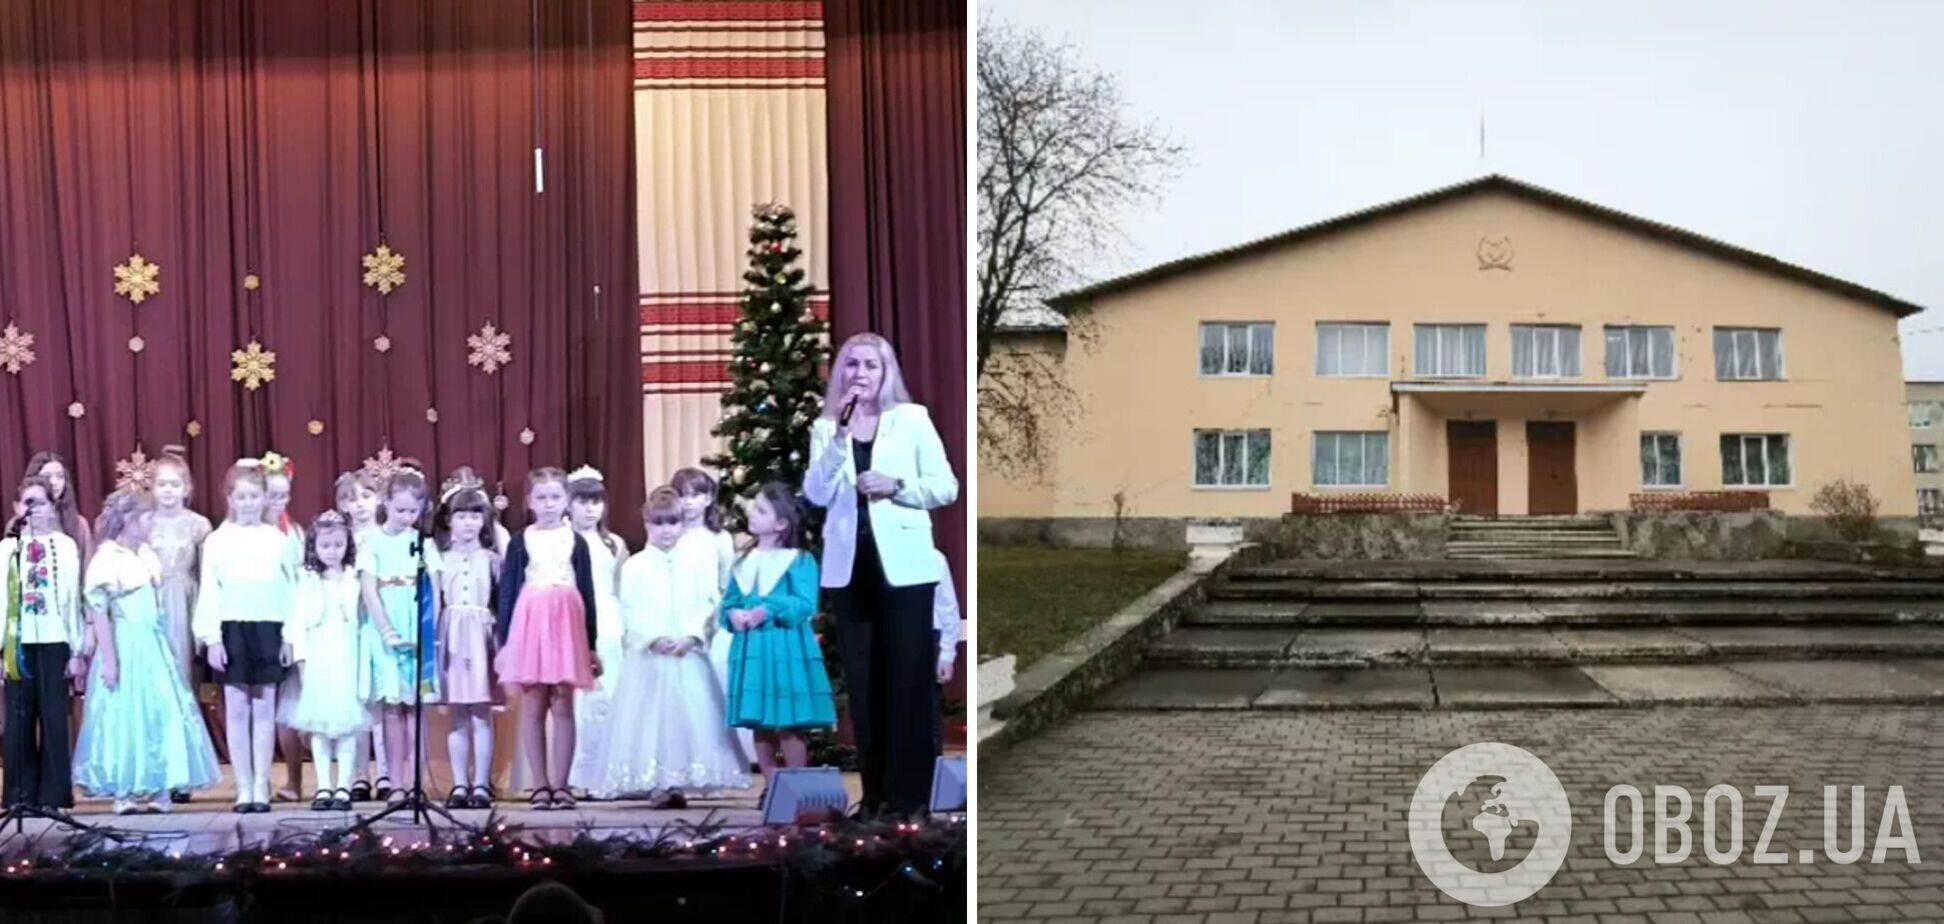 Реальность, а не декларирование евростандартов: волонтеры запустили проект строительства туалета для музыкальной школы на Волыни